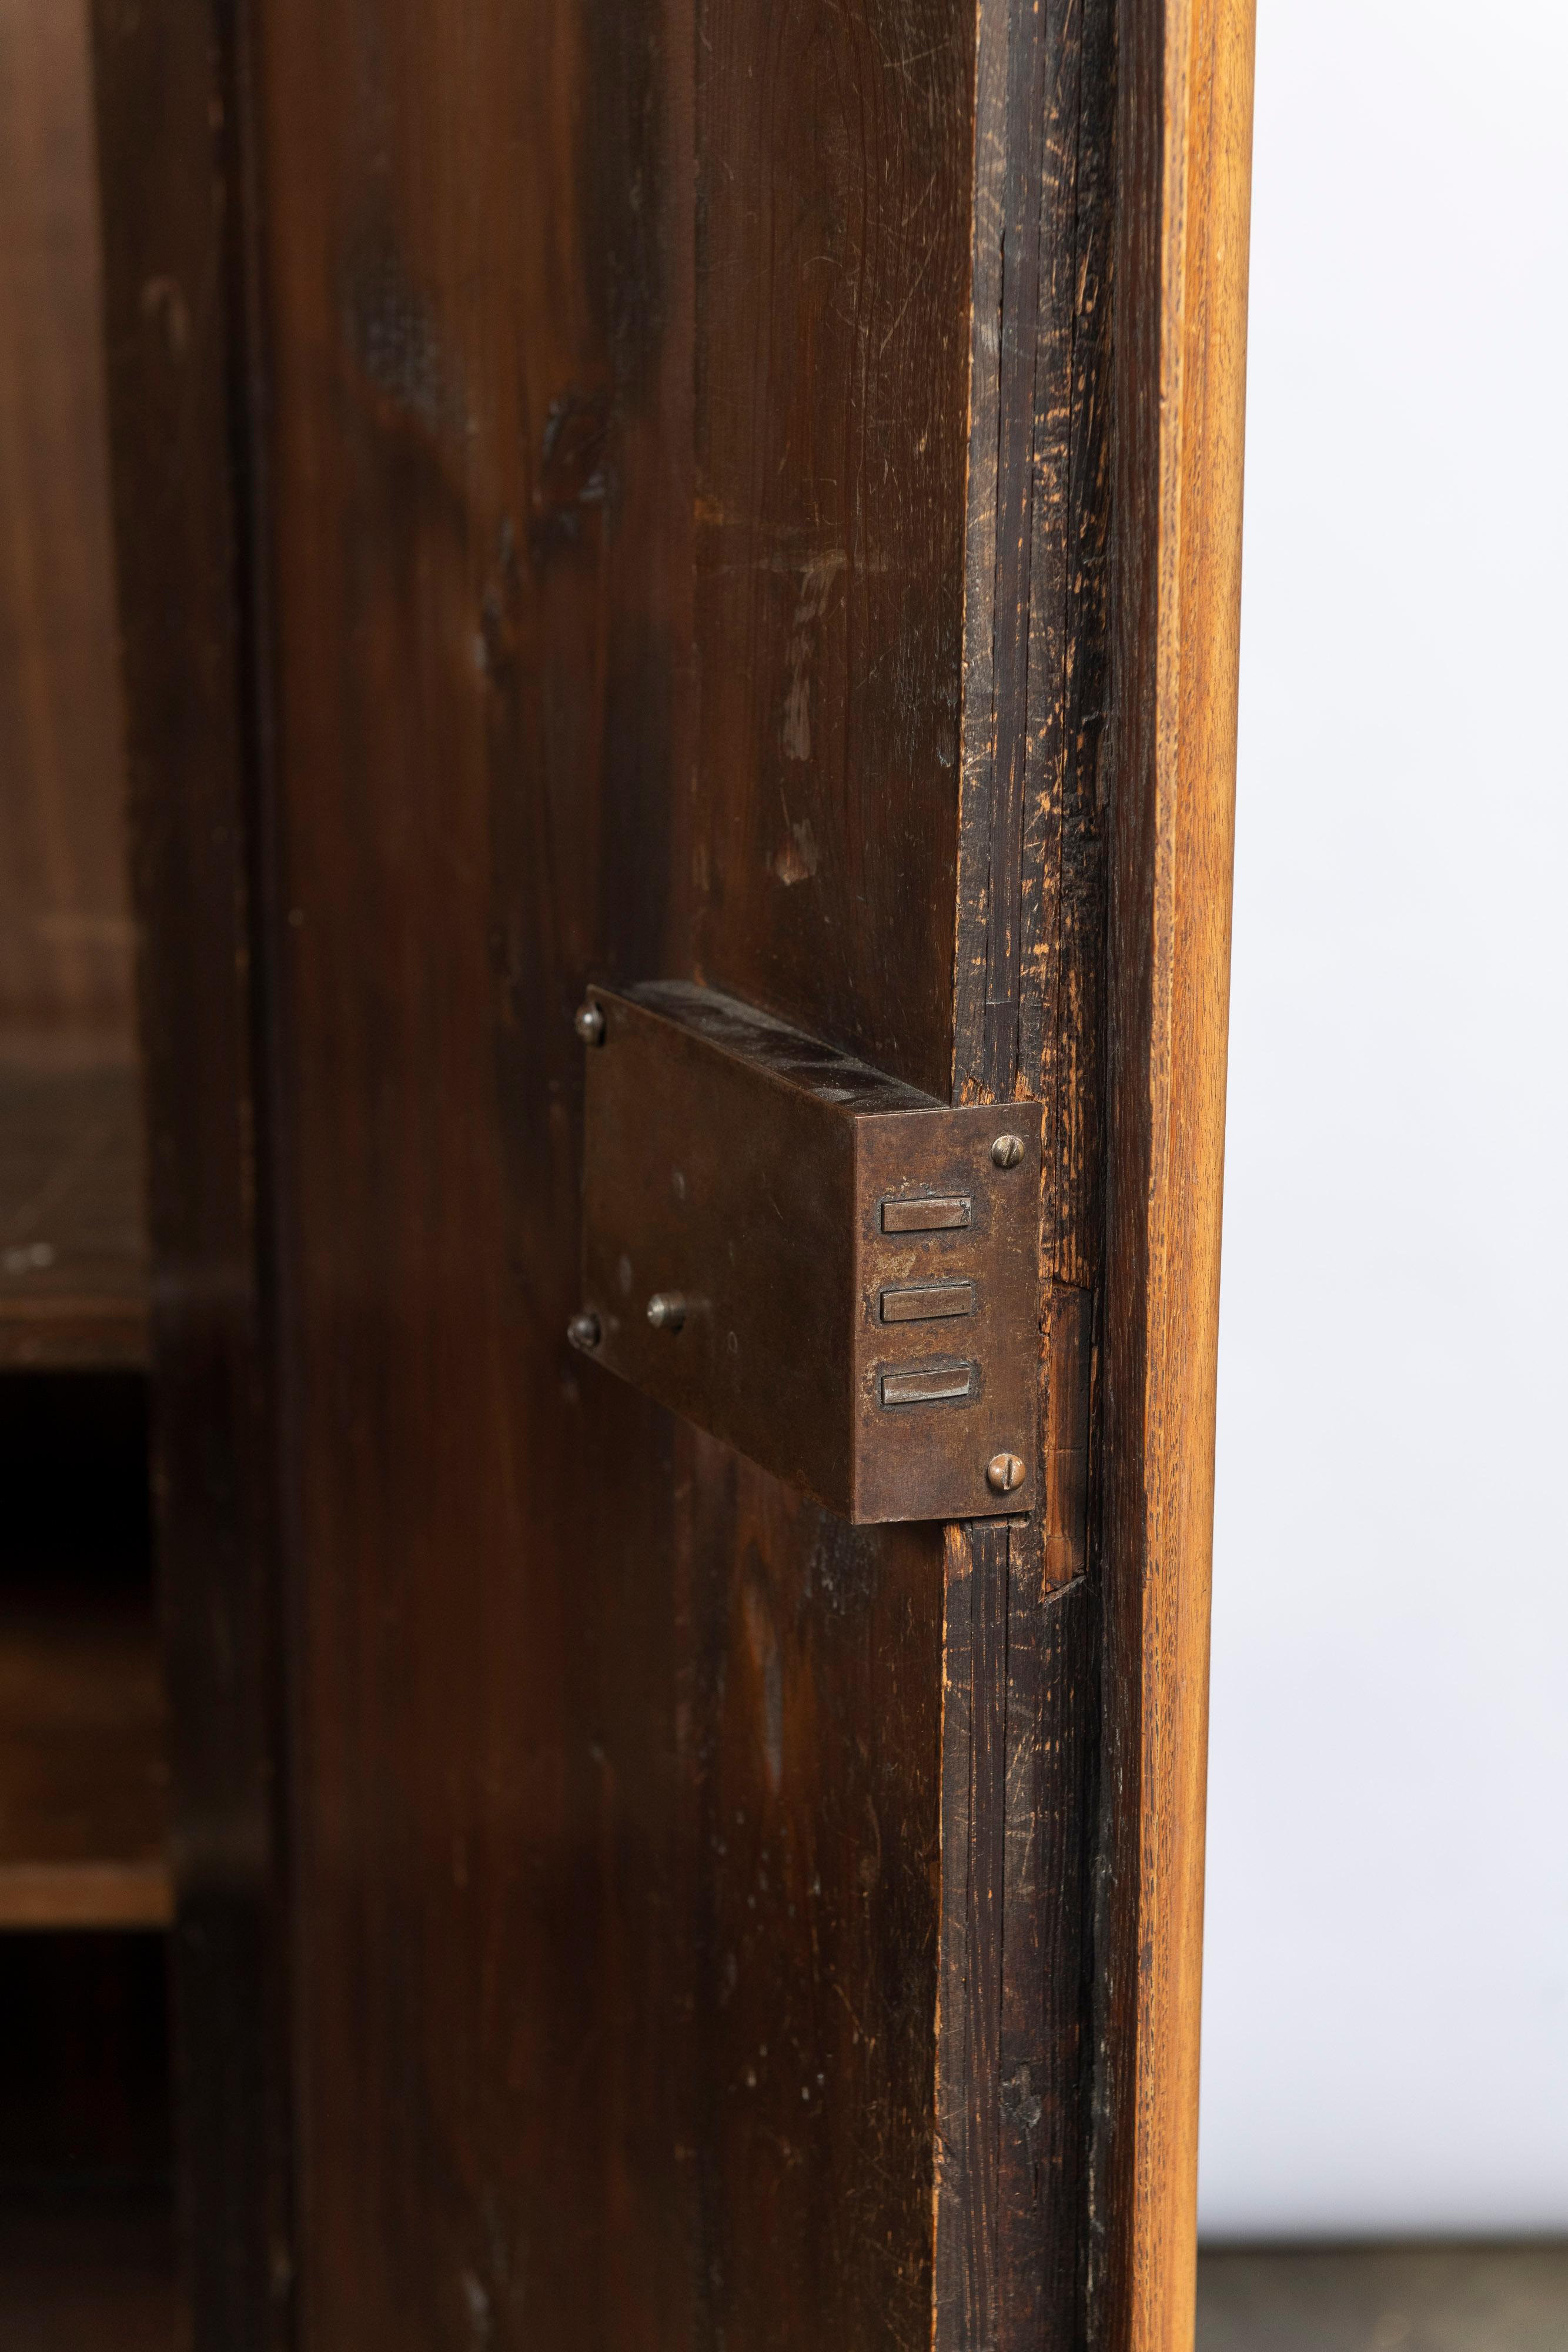 English Antique Oak Wardrobe with Corrugated Wood Doors, Shelves and Key 5